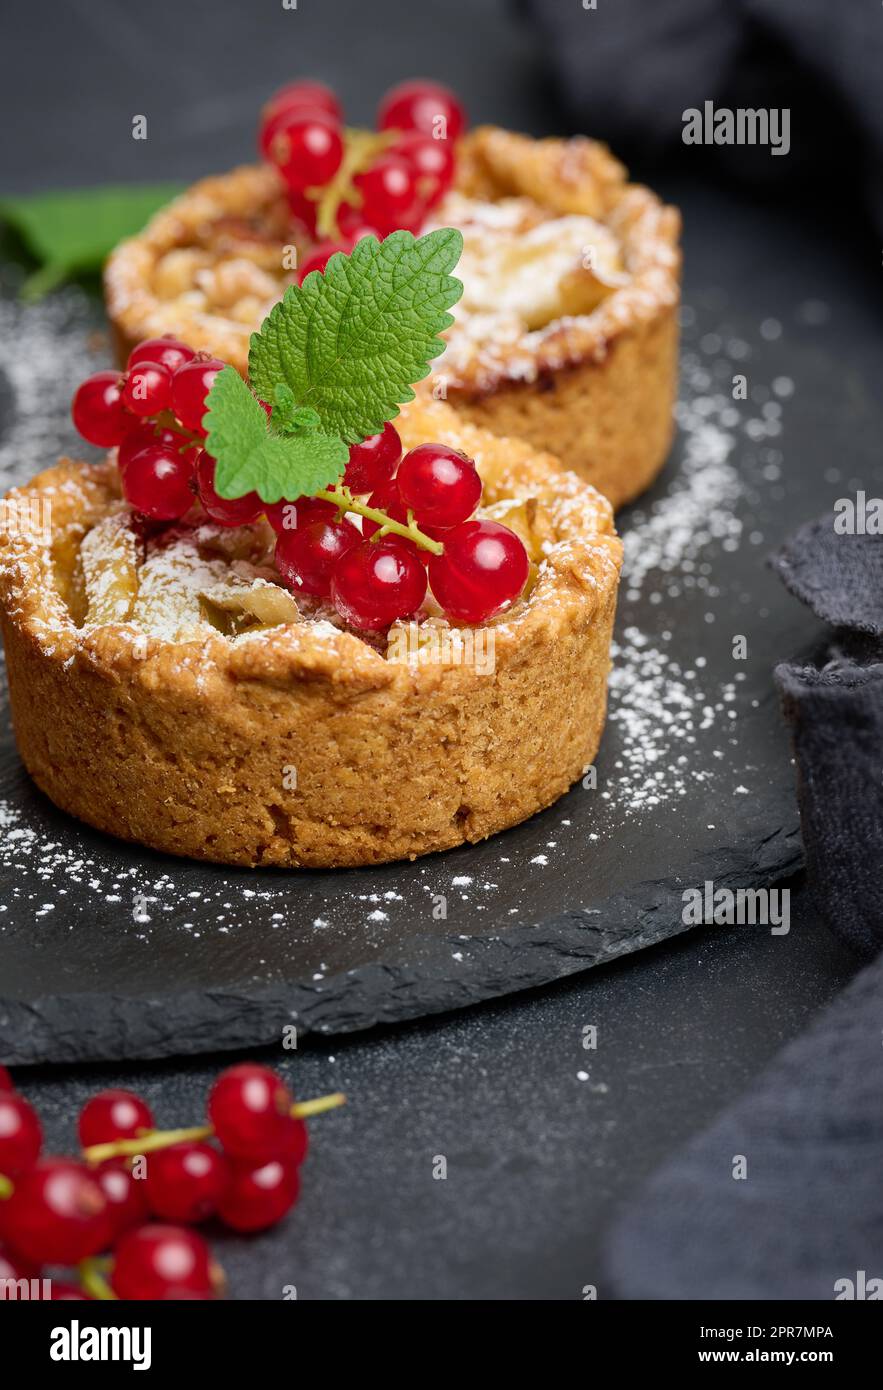 Tarte aux fruits avec des raisins de Corinthe rouges saupoudrés de sucre sur une table noire, délicieux dessert Banque D'Images